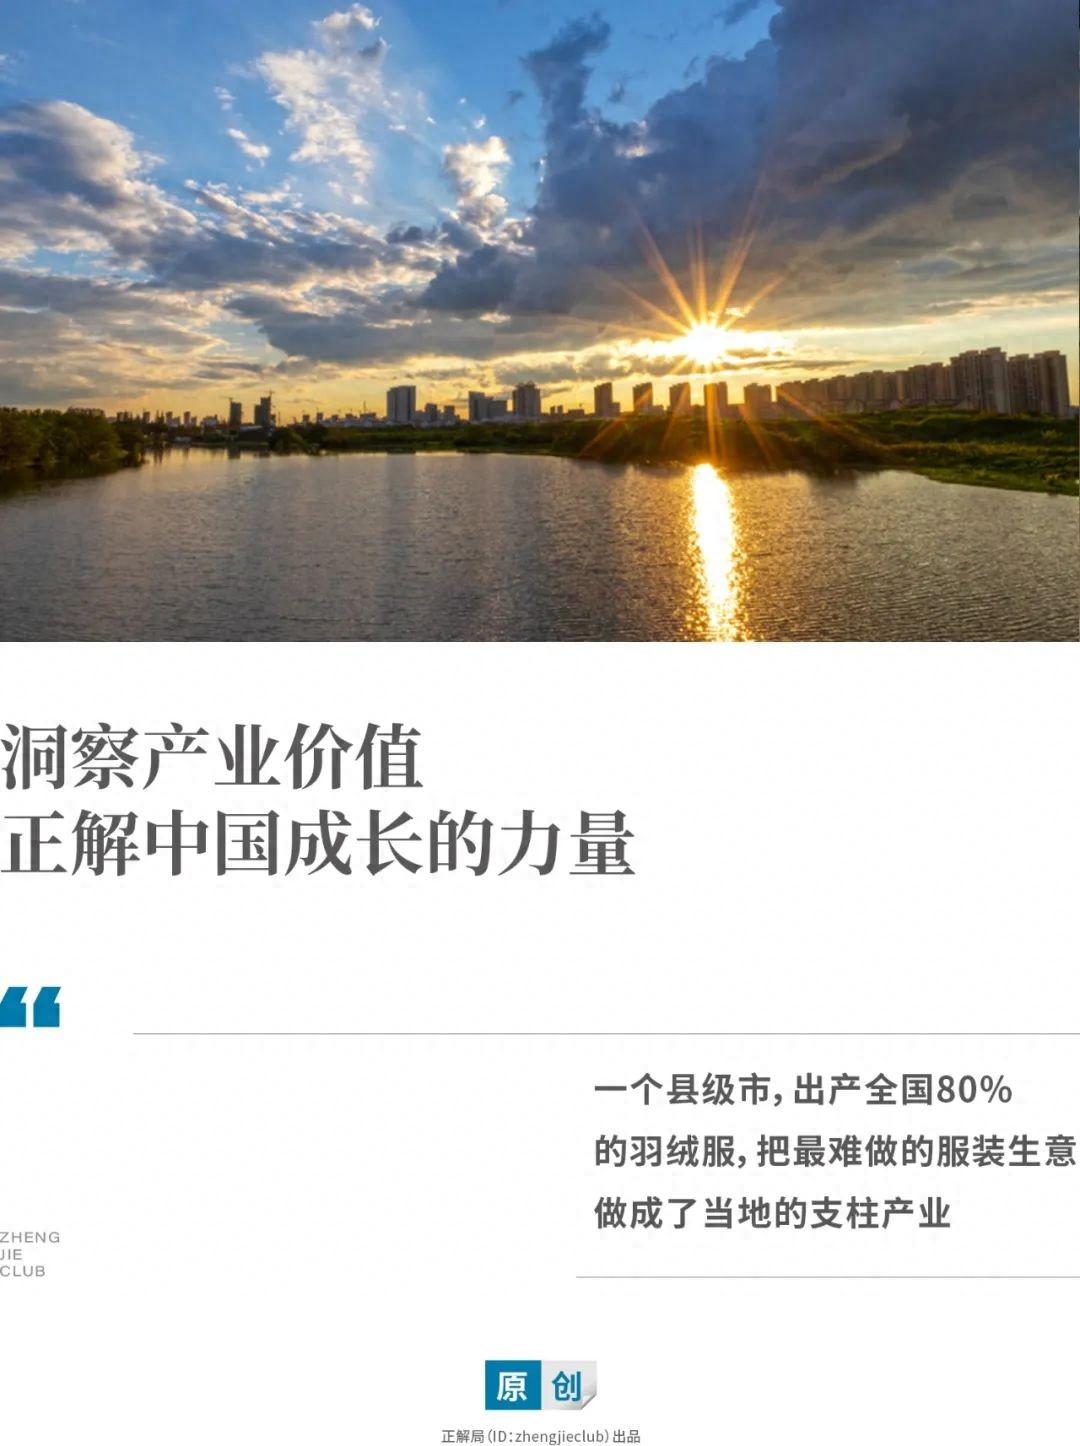 承包了中国80%羽绒服，浙江小城凭什么？